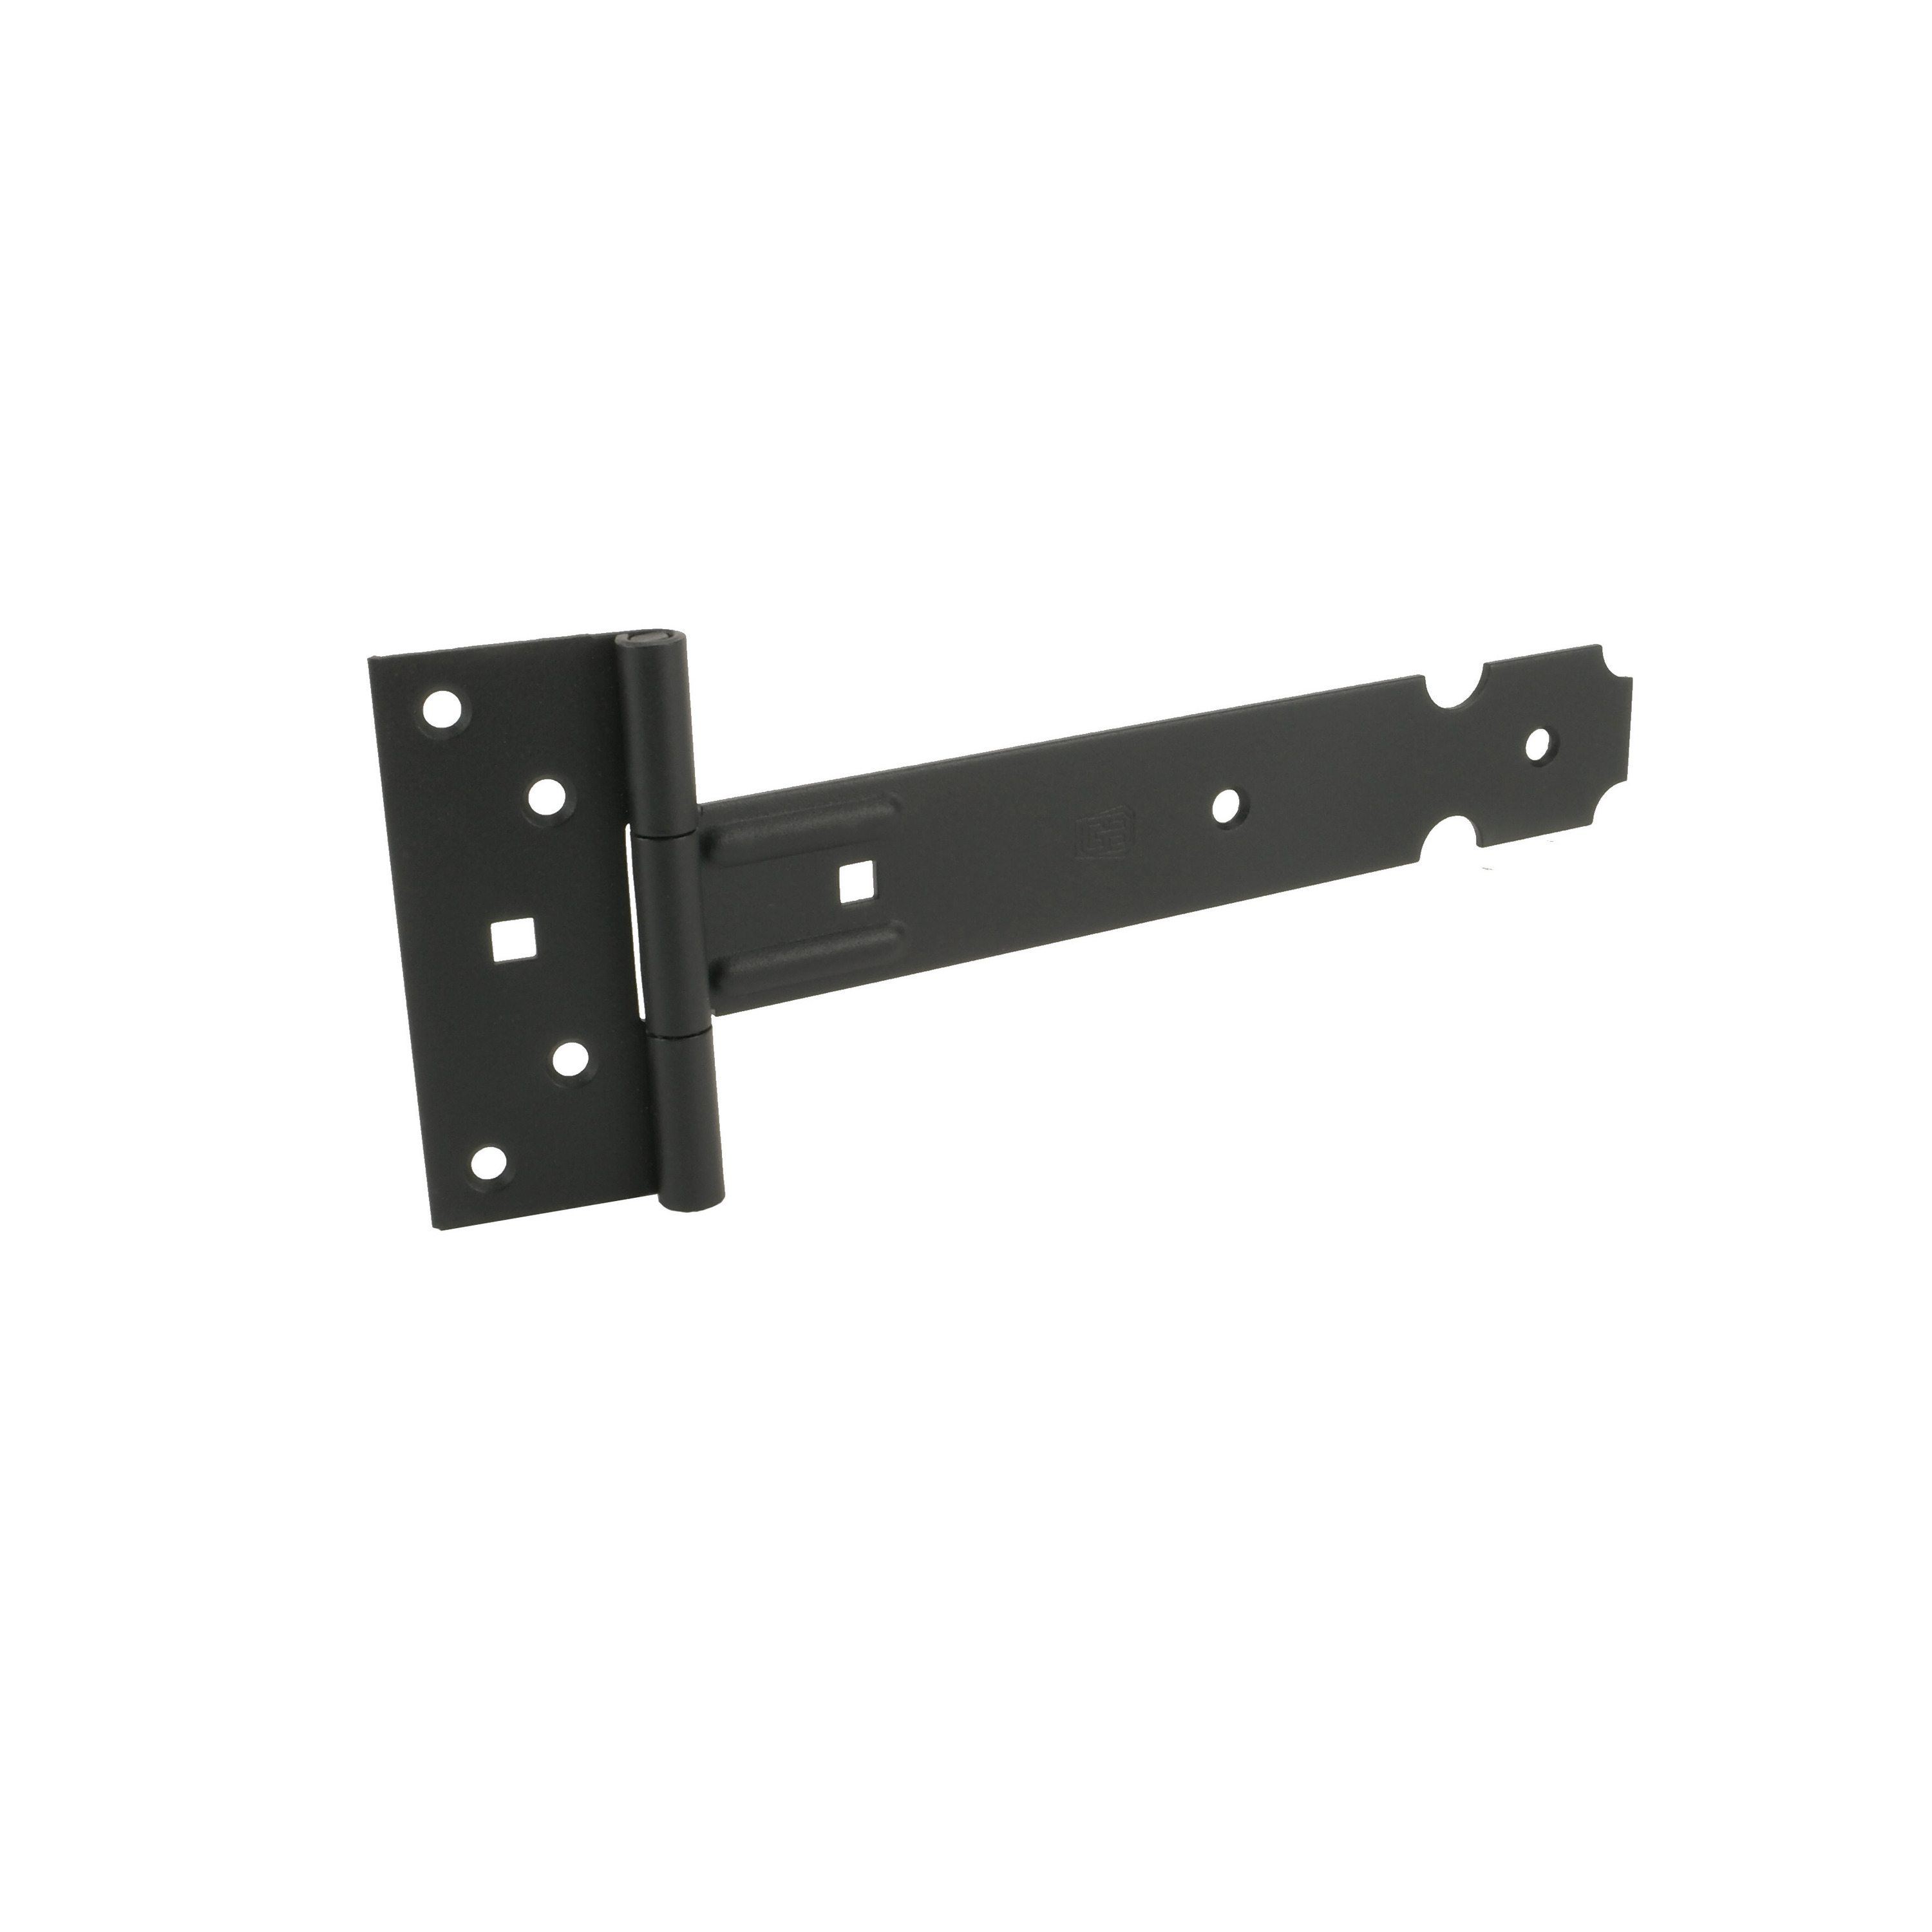 1x Poortscharnieren-hekwerk-kruisheng scharnieren staal zwart epoxy 25 x 3.5 cm